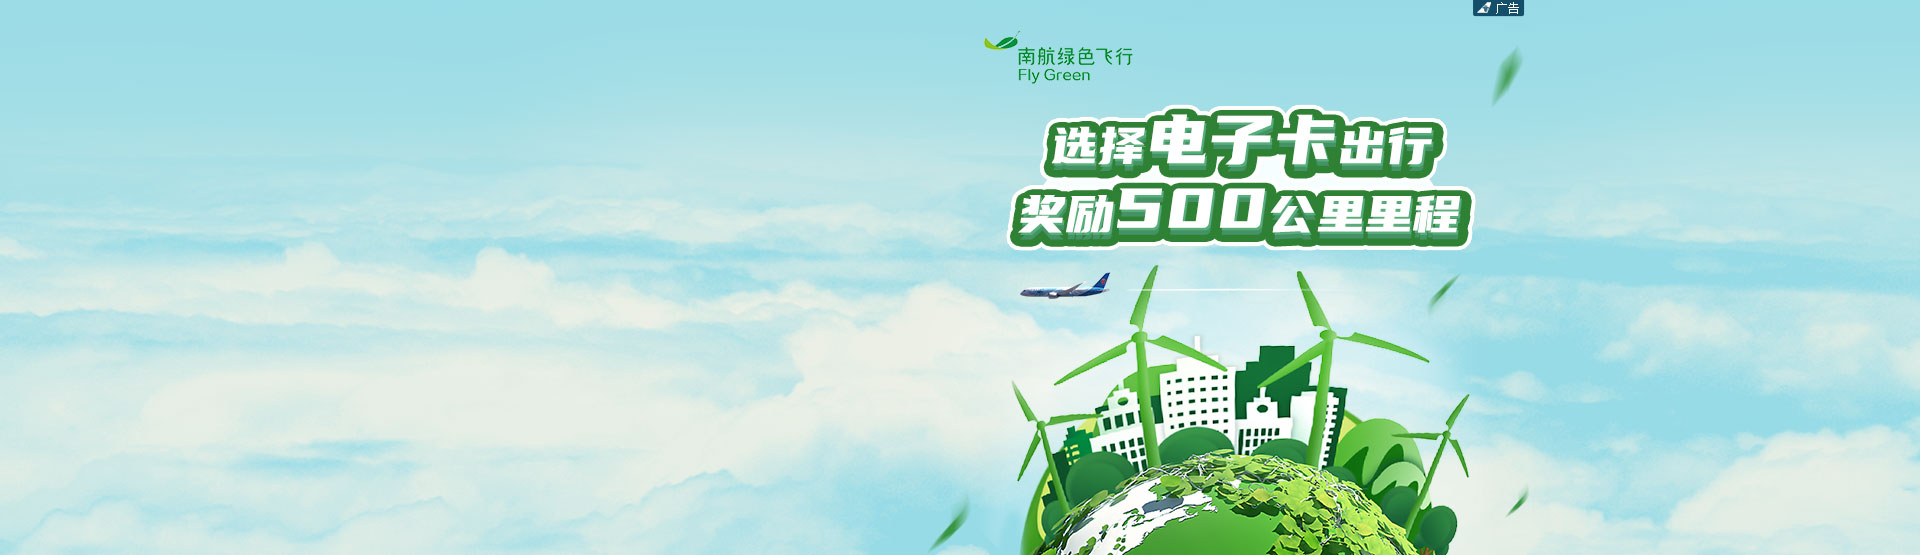 中国南方航空官网 南航机票预订 飞机票查询 航班查询 特价机票